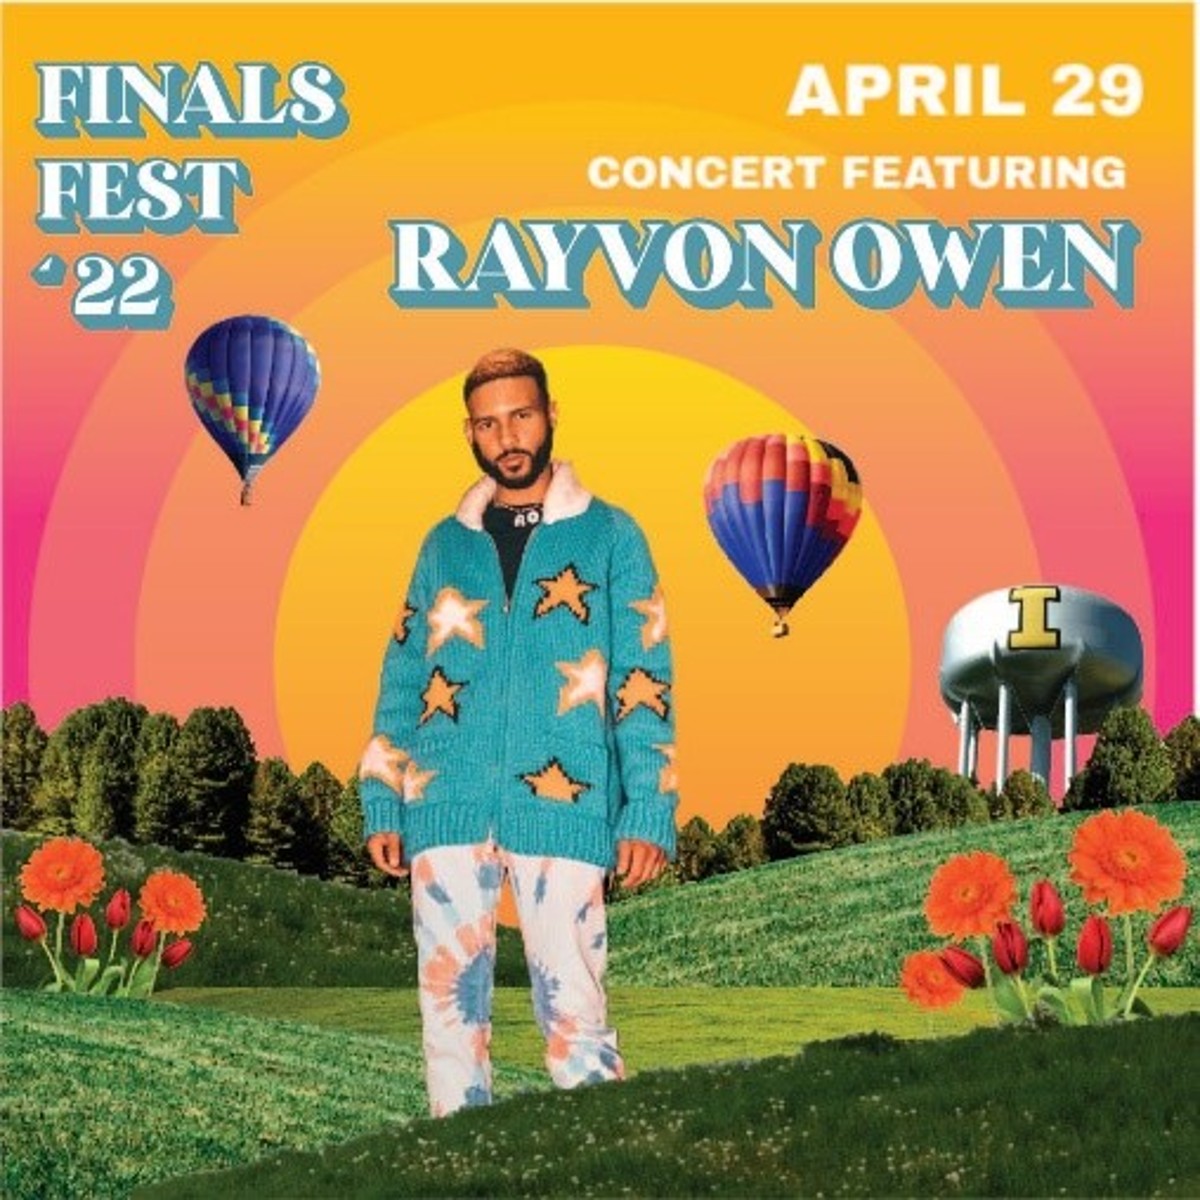 2022 Finals Fest Rayvon Owen Concert